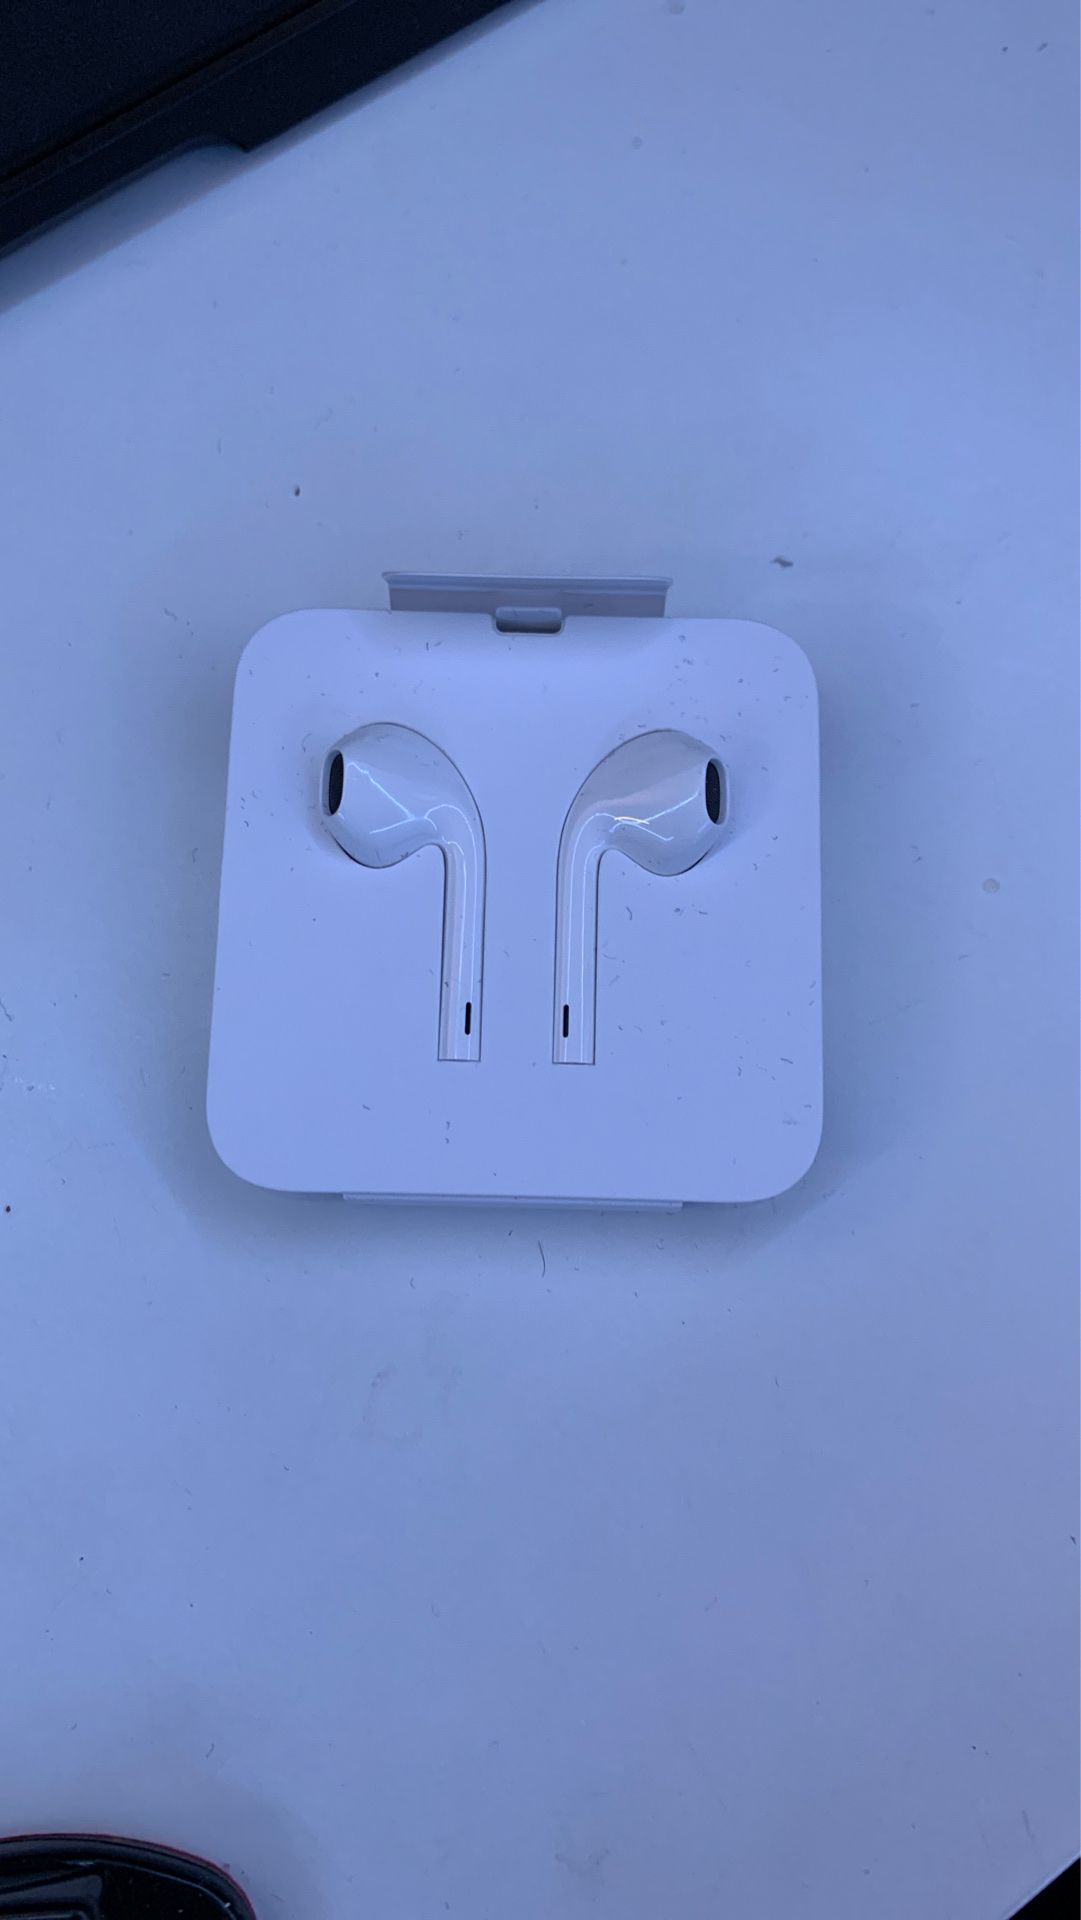 Apple wired earbud headphones